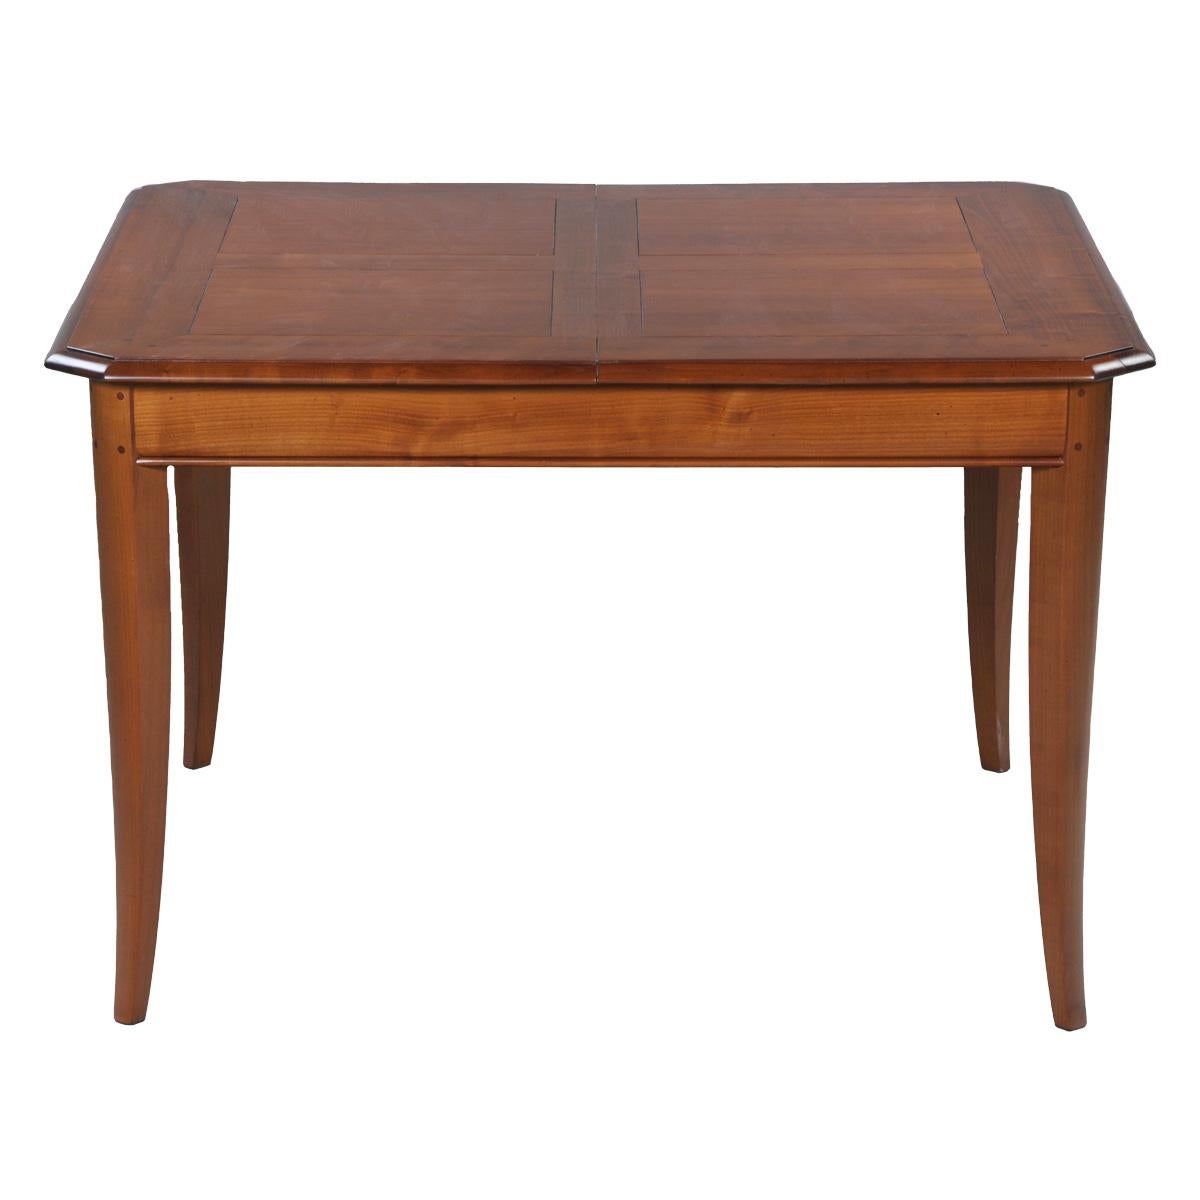 Cette table de salle à manger carrée est typique des meubles classiques français et fait partie de notre collection TRADITION qui reprend les classiques intemporels du charme de la campagne française. Les pieds en forme de sabre, les pilastres et